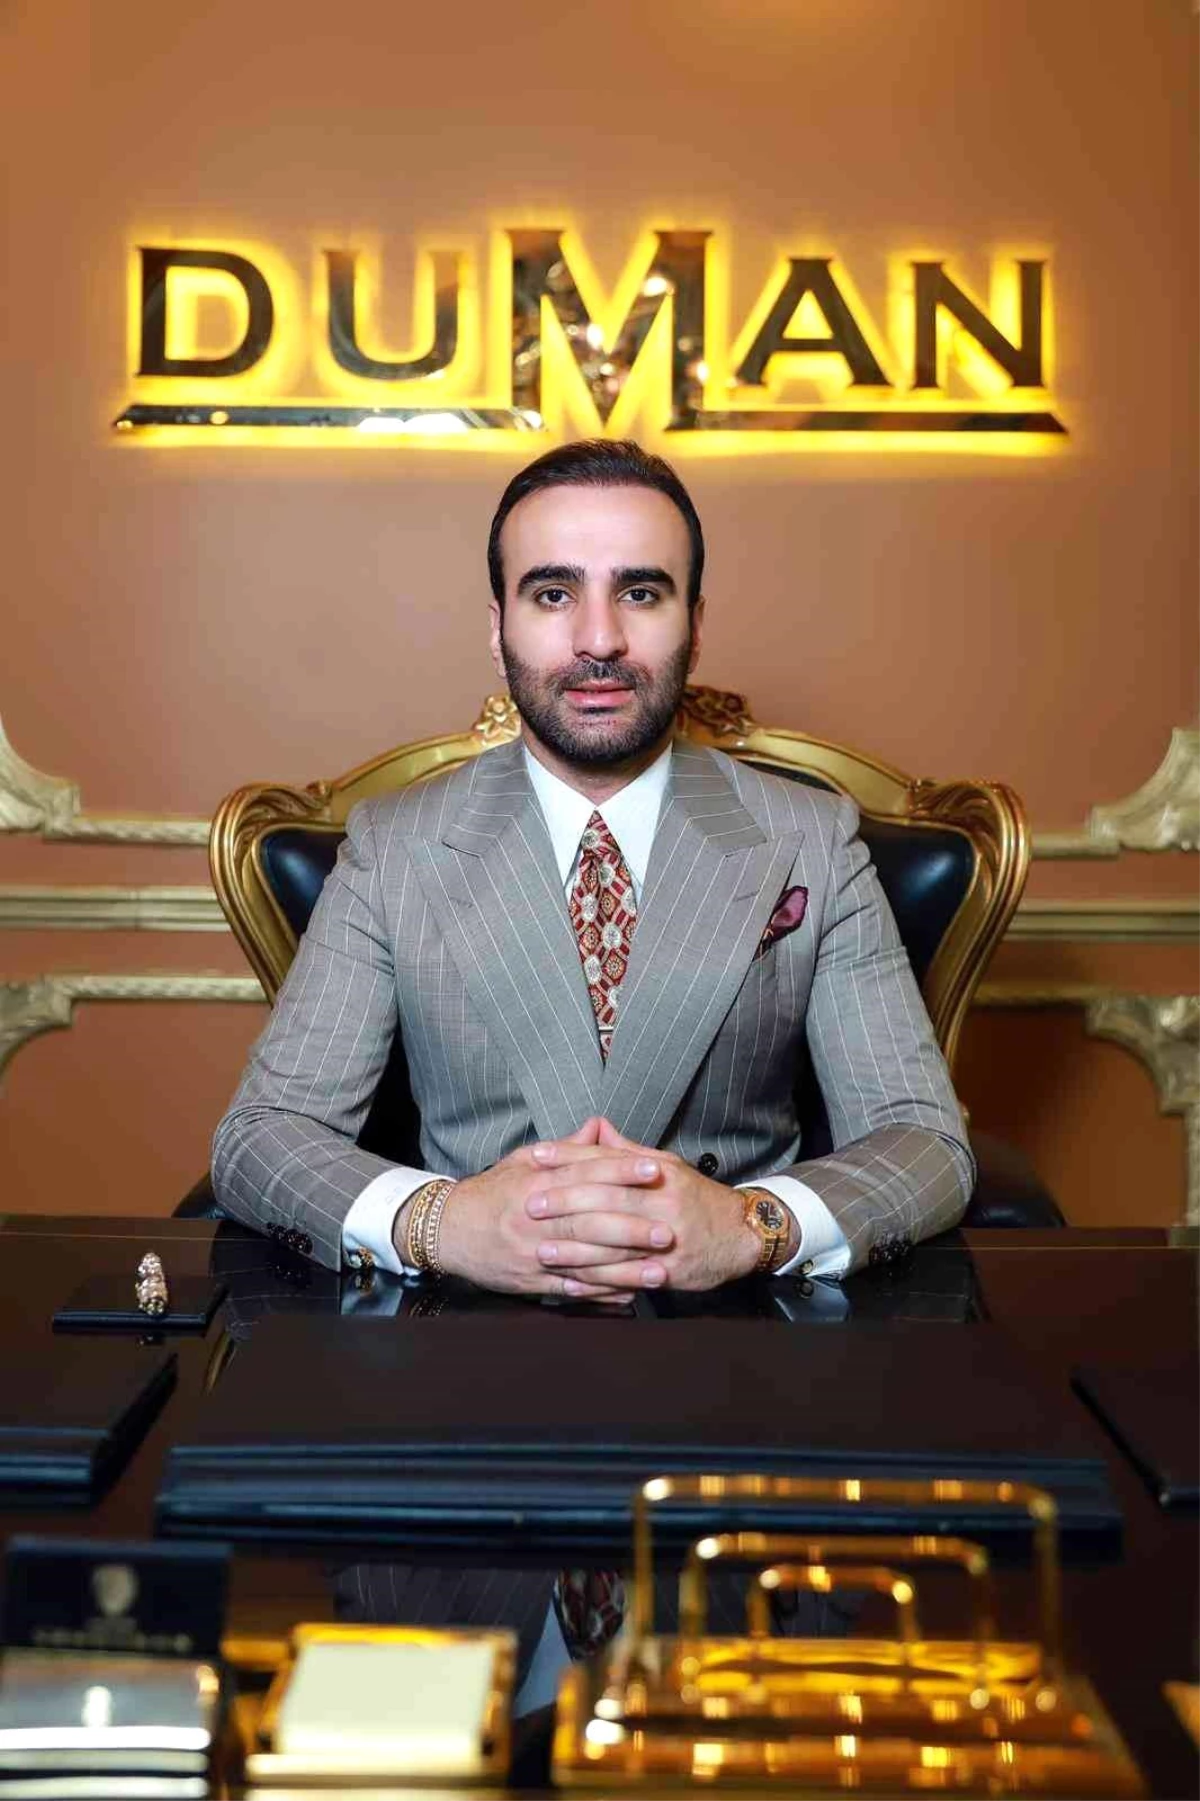 Avukat Duman: "Başörtüsü konusunun temelinin sağlamlaştırılması gerekmektedir"